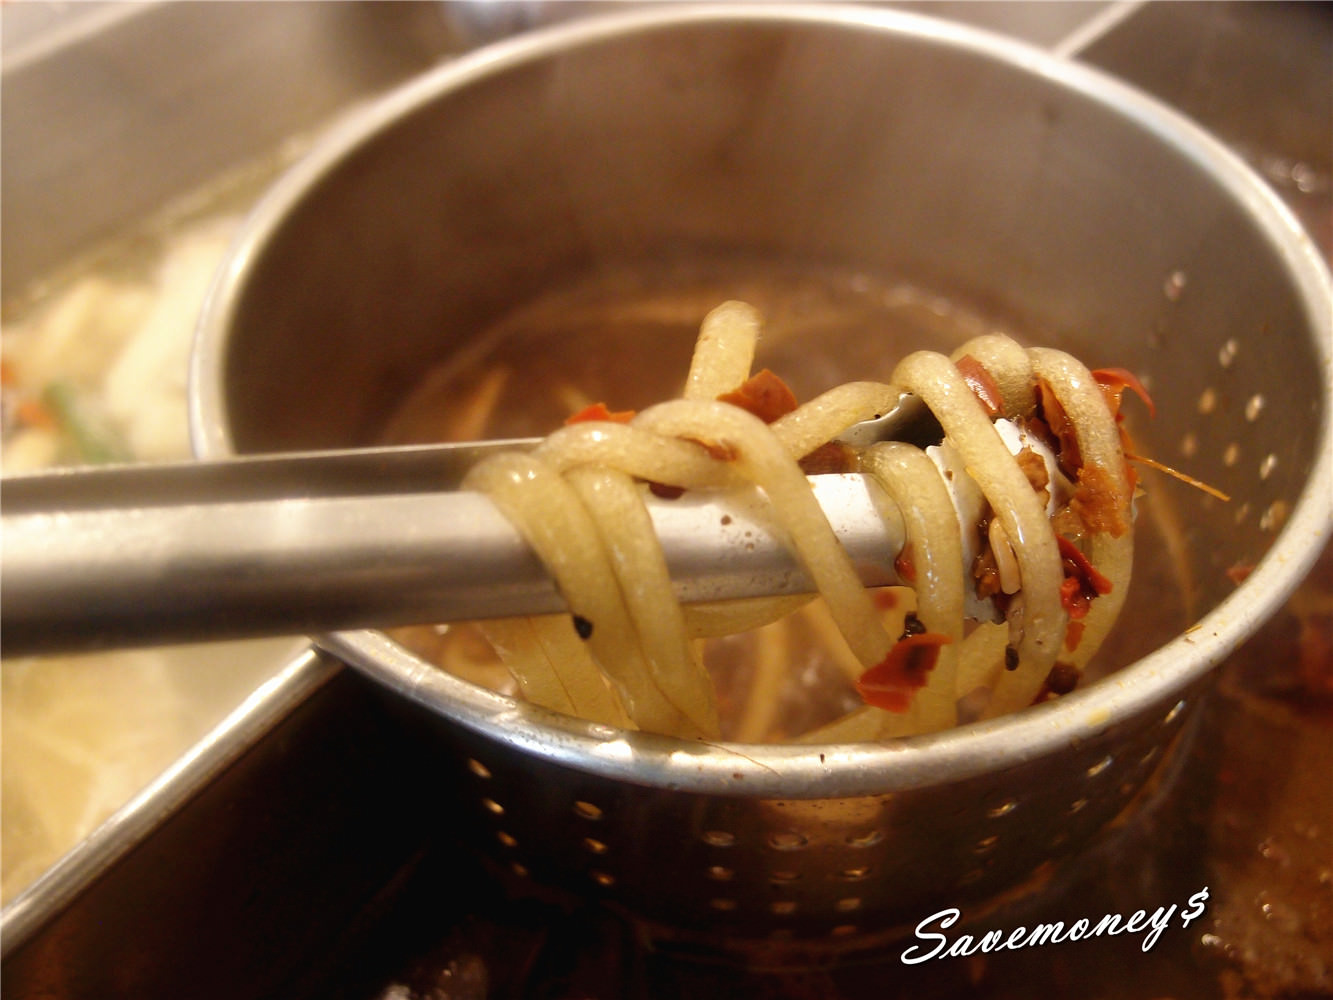 【豐原美食】台中麻辣火鍋~錦官印象老成都,味覺的極致饗宴,吃過還想再回味!